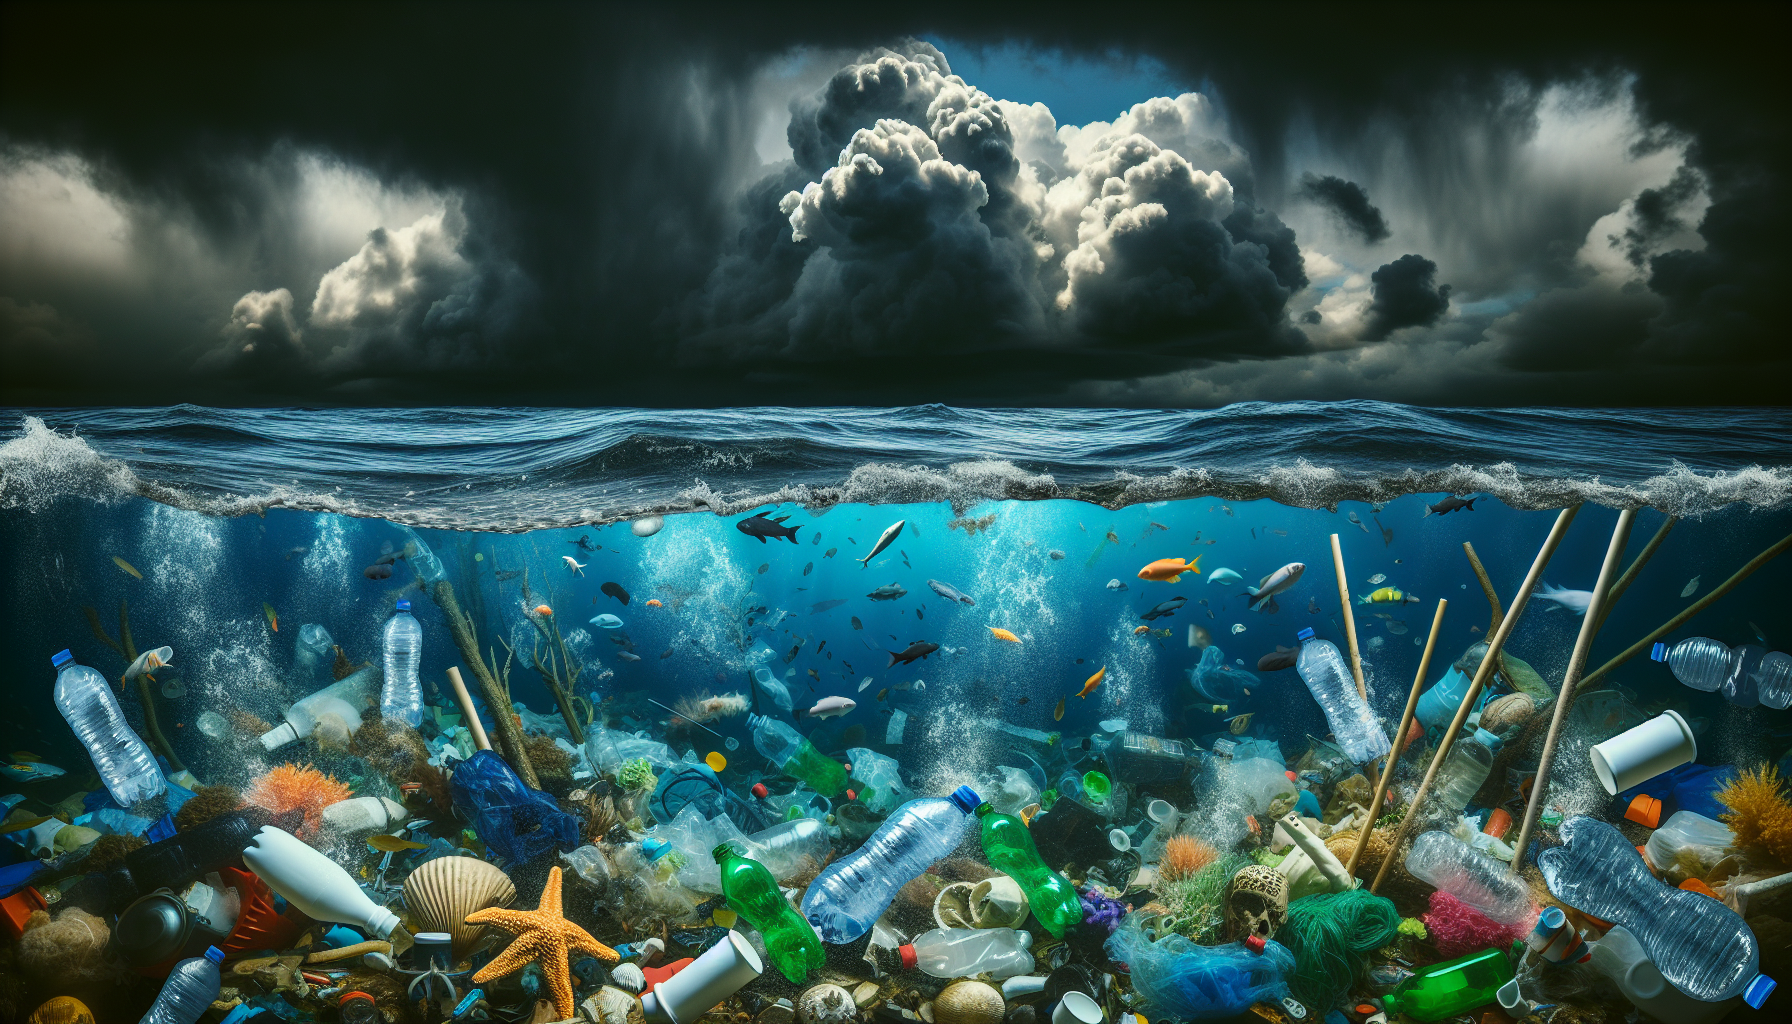 Marine litter polluting ocean waters